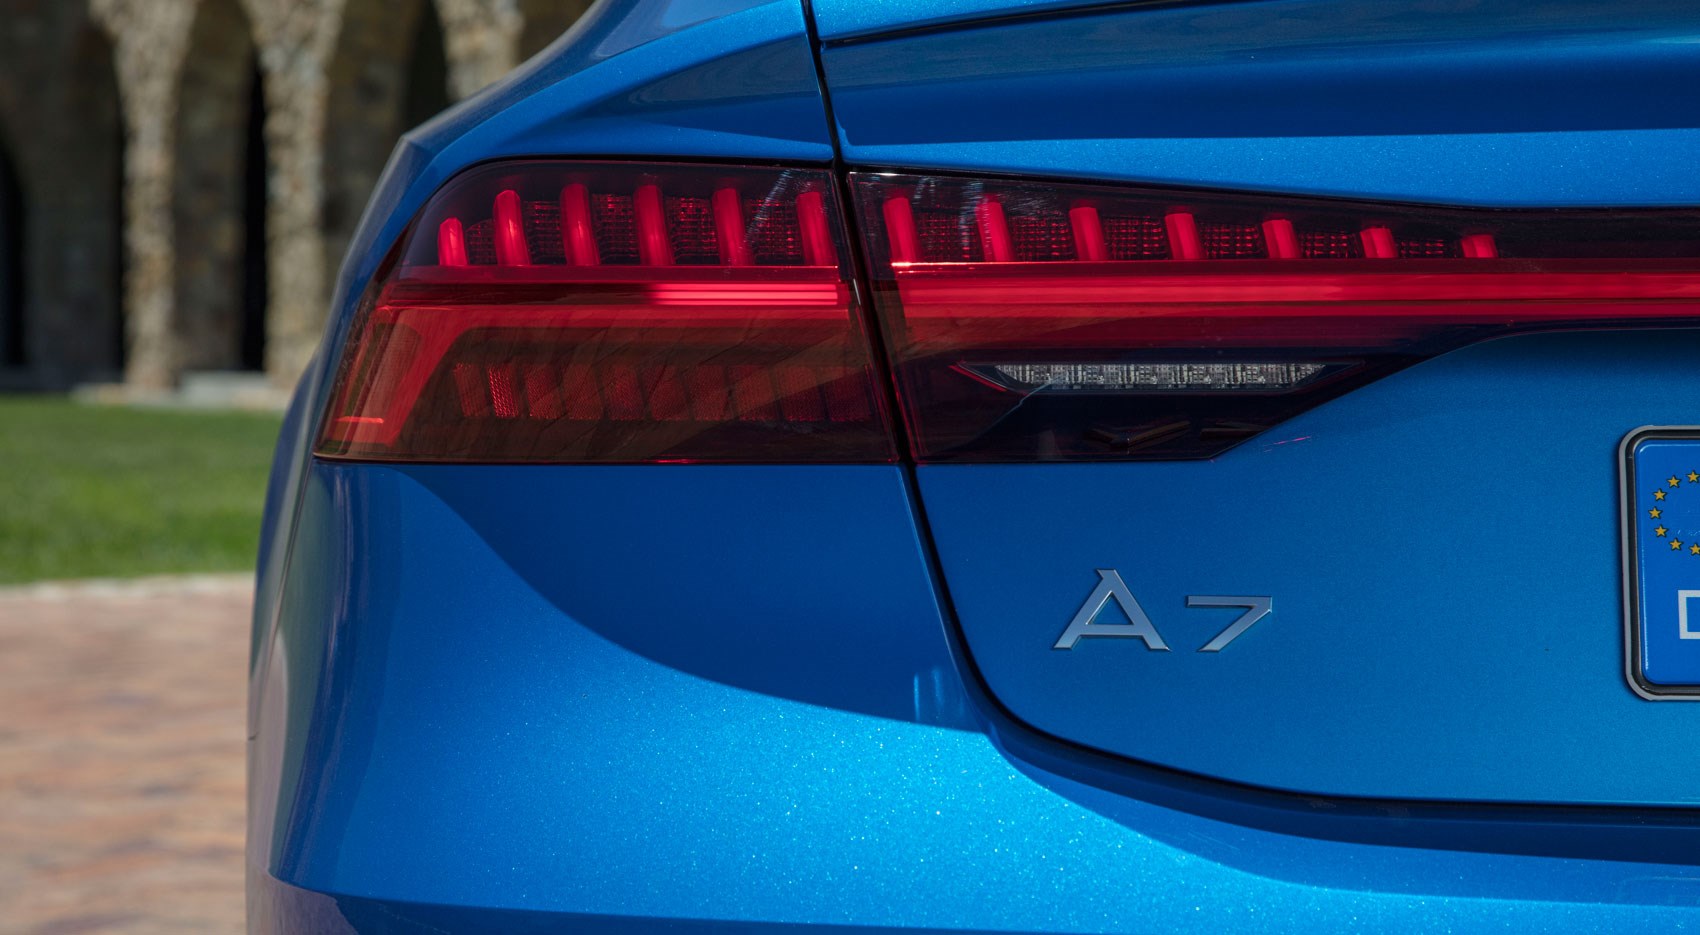 Audi A7 rear detail